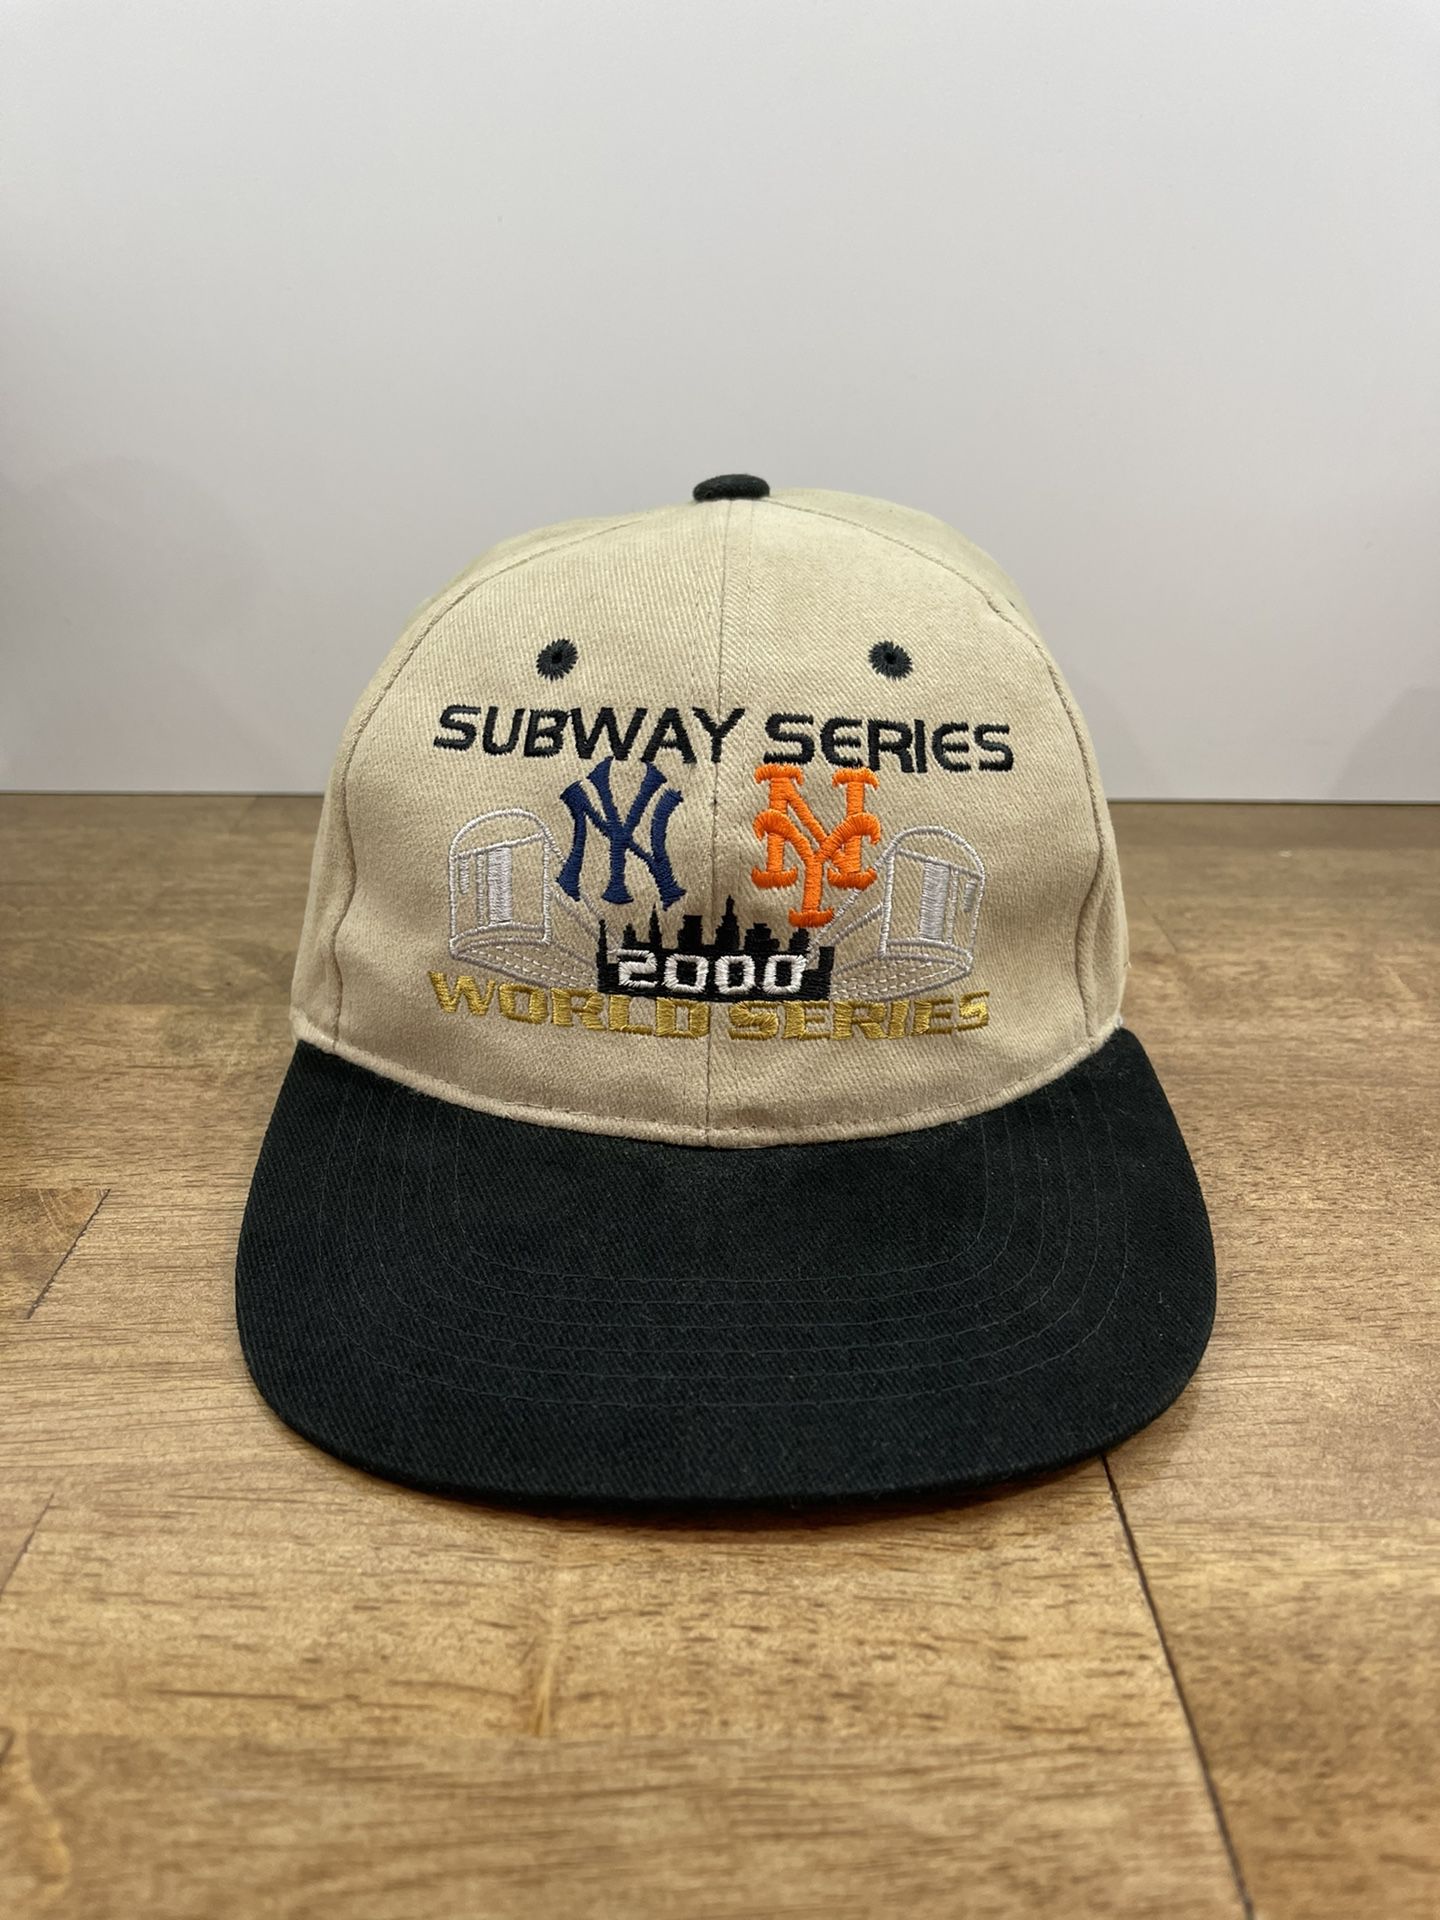 Vintage New York Yankees Mets Subway Series World Series Hat